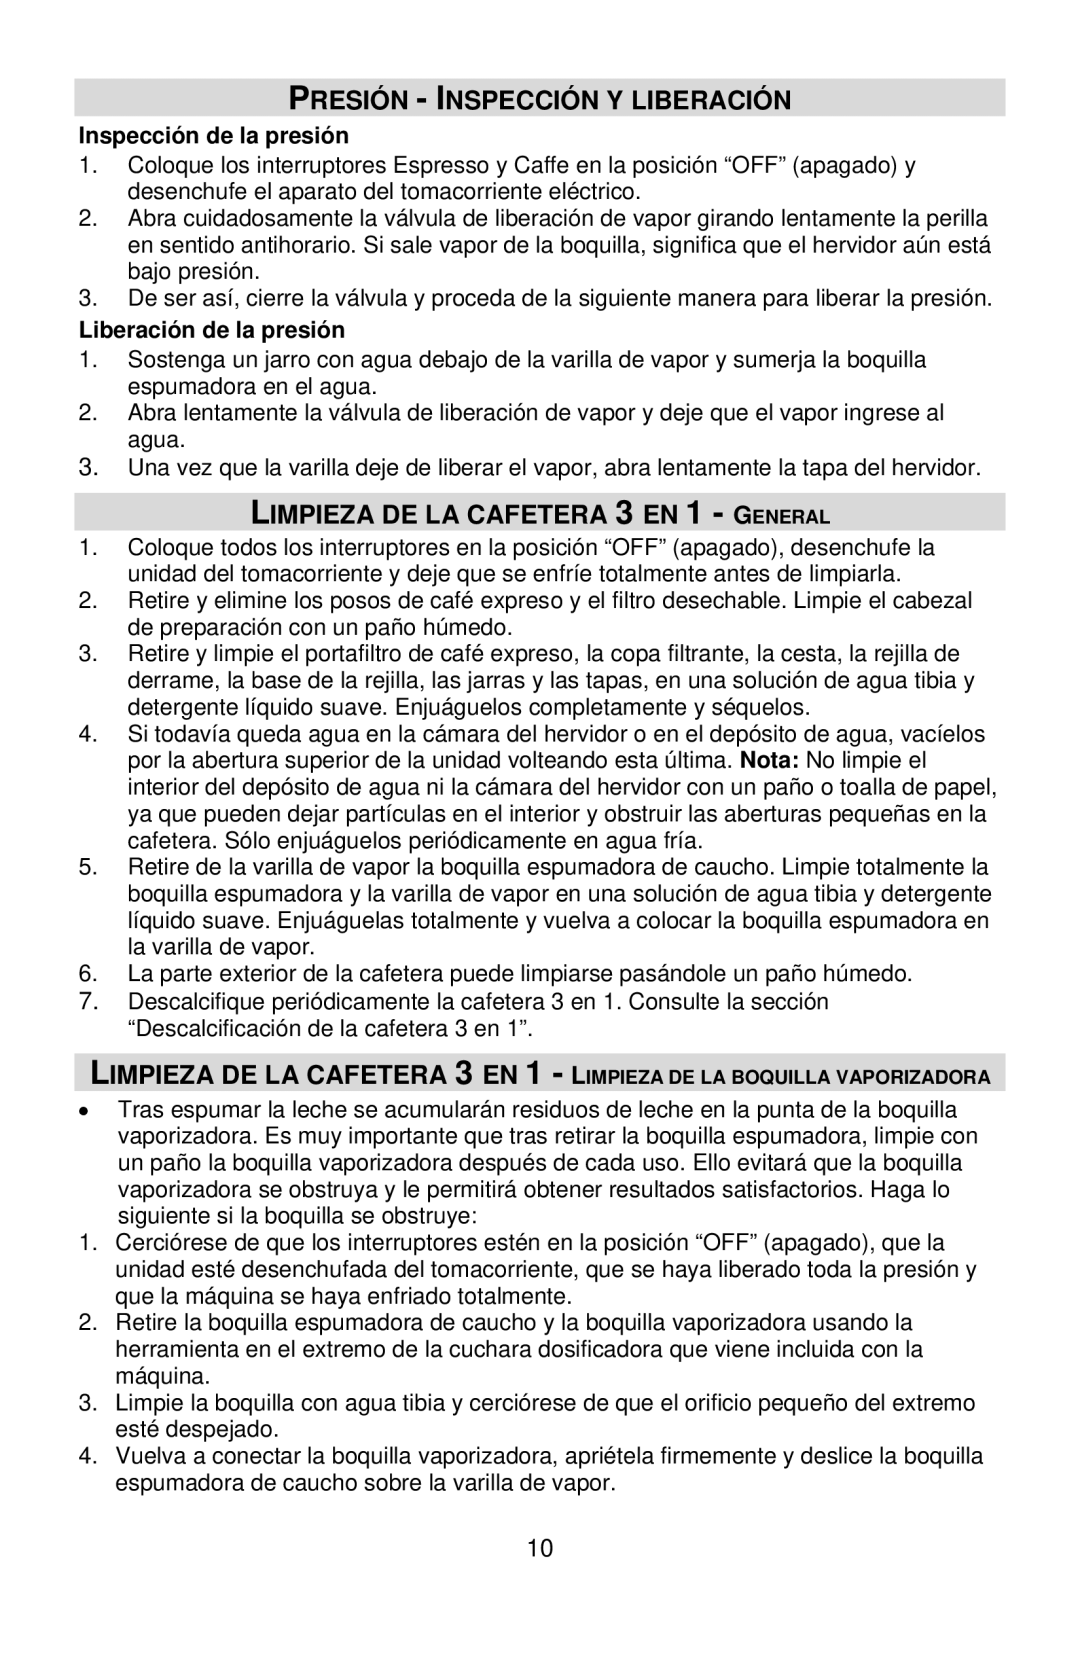 West Bend COFFEE CENTER instruction manual Presión Inspección Y Liberación, Limpieza DE LA Cafetera 3 EN 1 General 